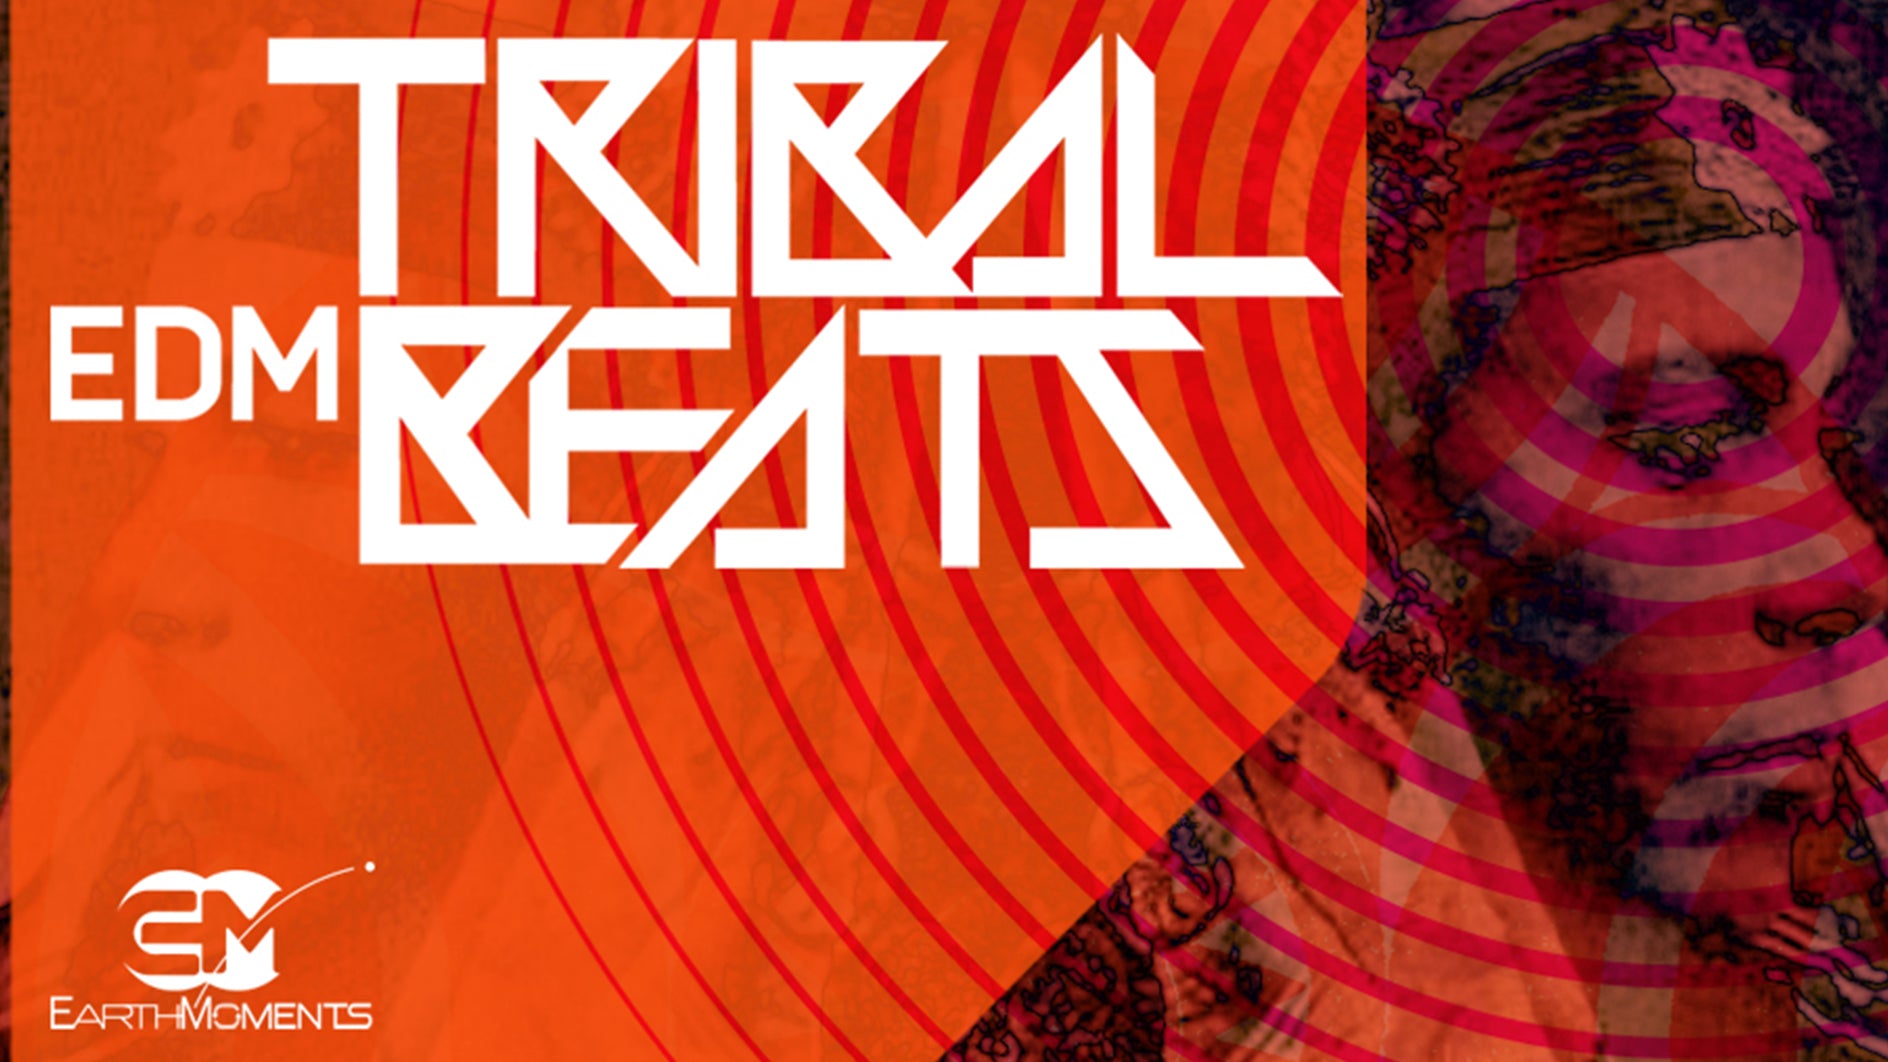 Tribal EDM Beats